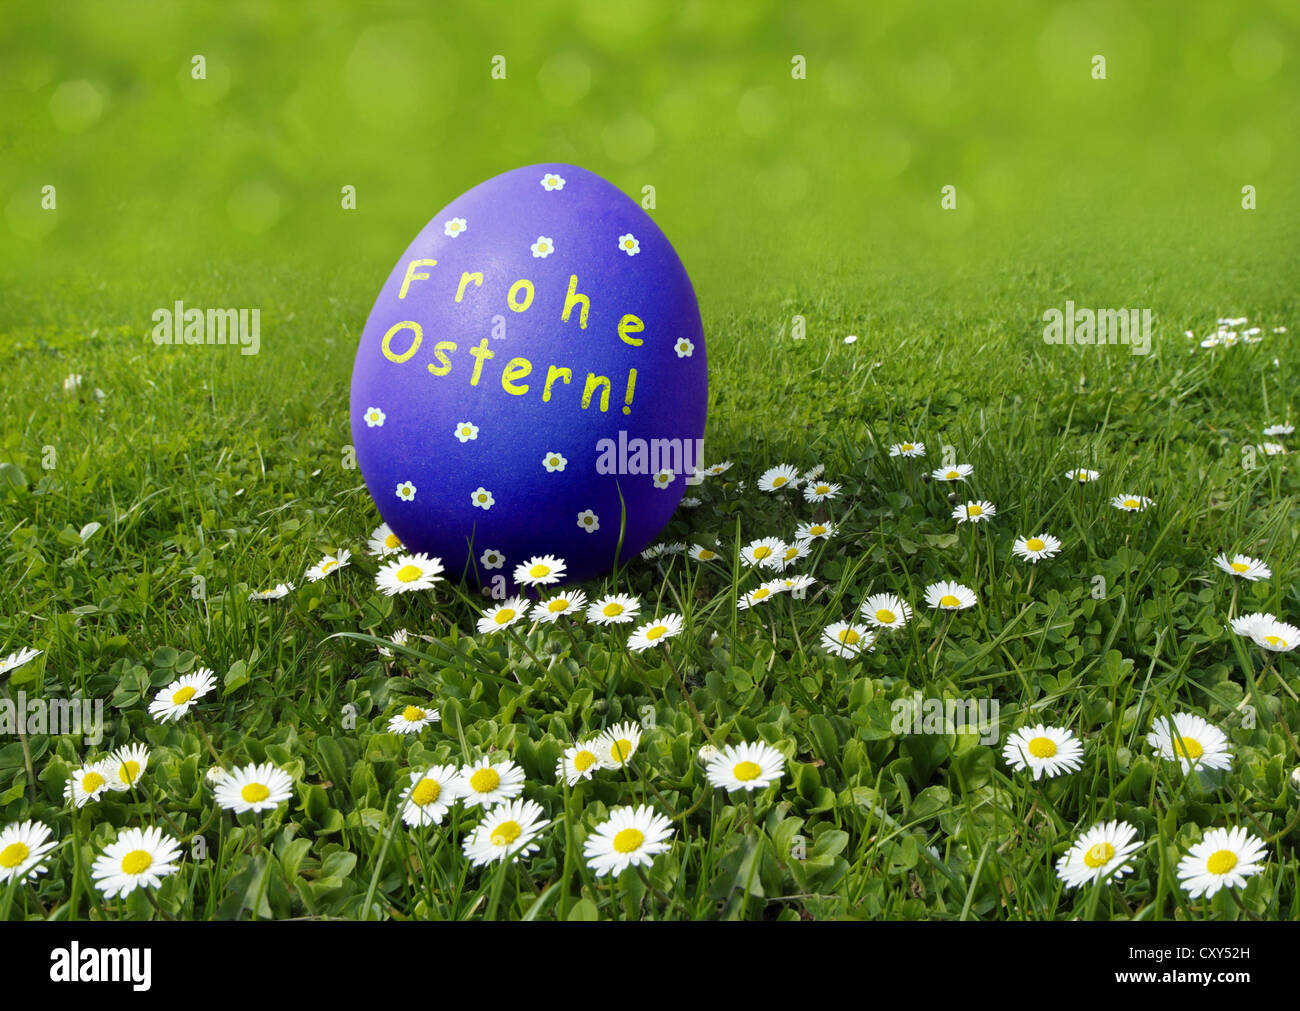 Oeufs de Pâques bleu avec 'Frohe Osten' souhaite, l'allemand pour 'Joyeuses Pâques' sur une prairie avec daisies Banque D'Images